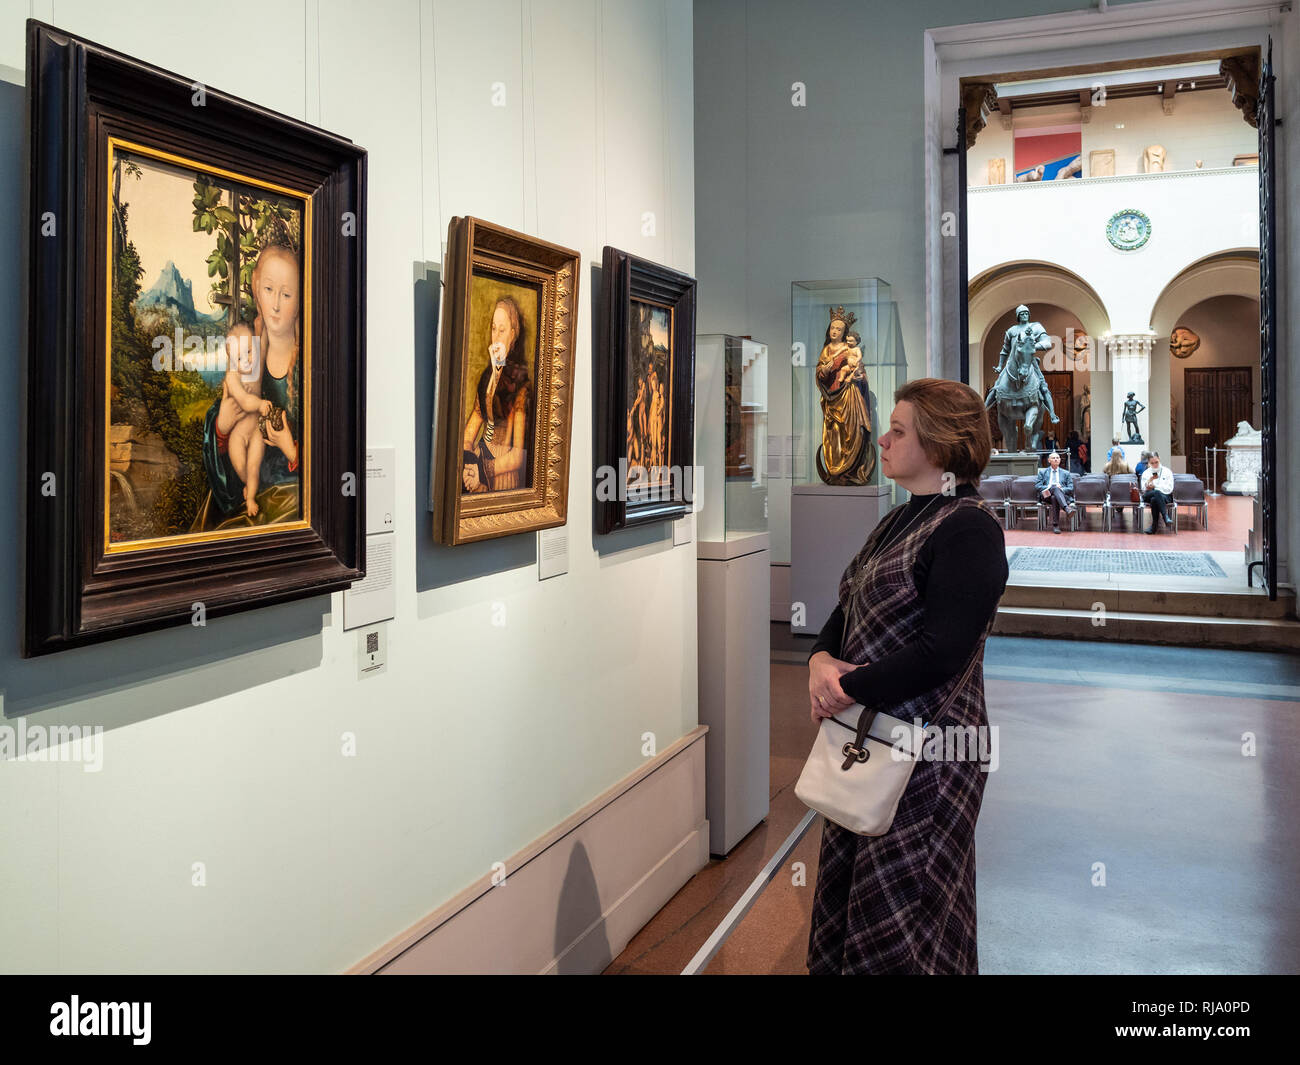 Mosca, Russia - 25 gennaio 2019: visitatore visualizza dipinti nella stanza di Lucas Cranach il Vecchio in Pushkin Museo Statale di Belle Arti. Museo Puskin è t Foto Stock